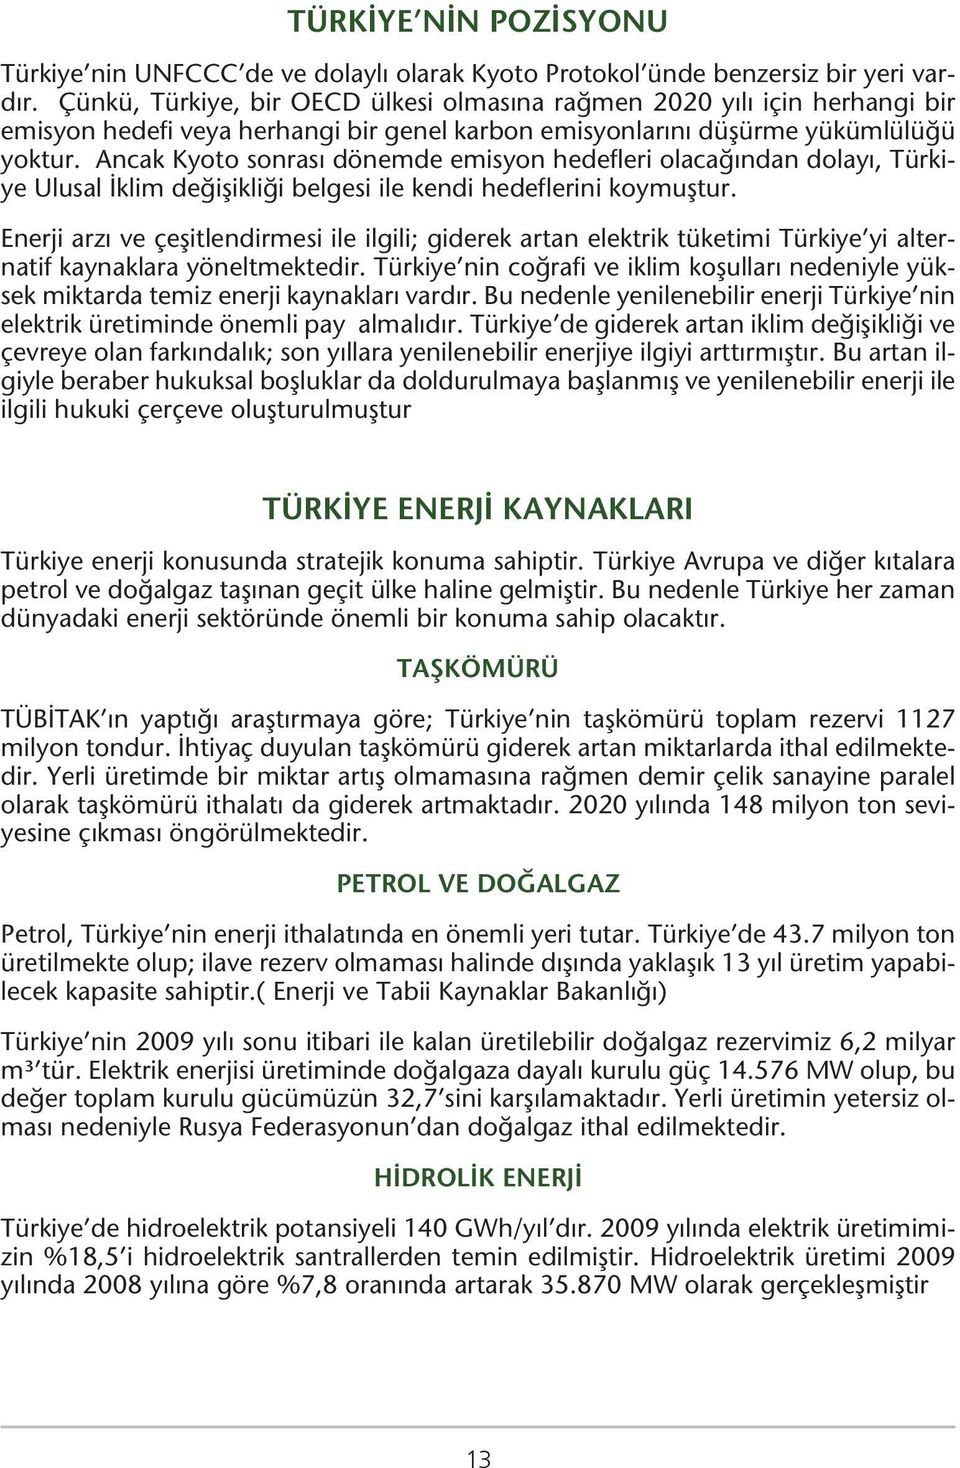 Ancak Kyoto sonrası dönemde emisyon hedefleri olacağından dolayı, Türkiye Ulusal İklim değişikliği belgesi ile kendi hedeflerini koymuştur.